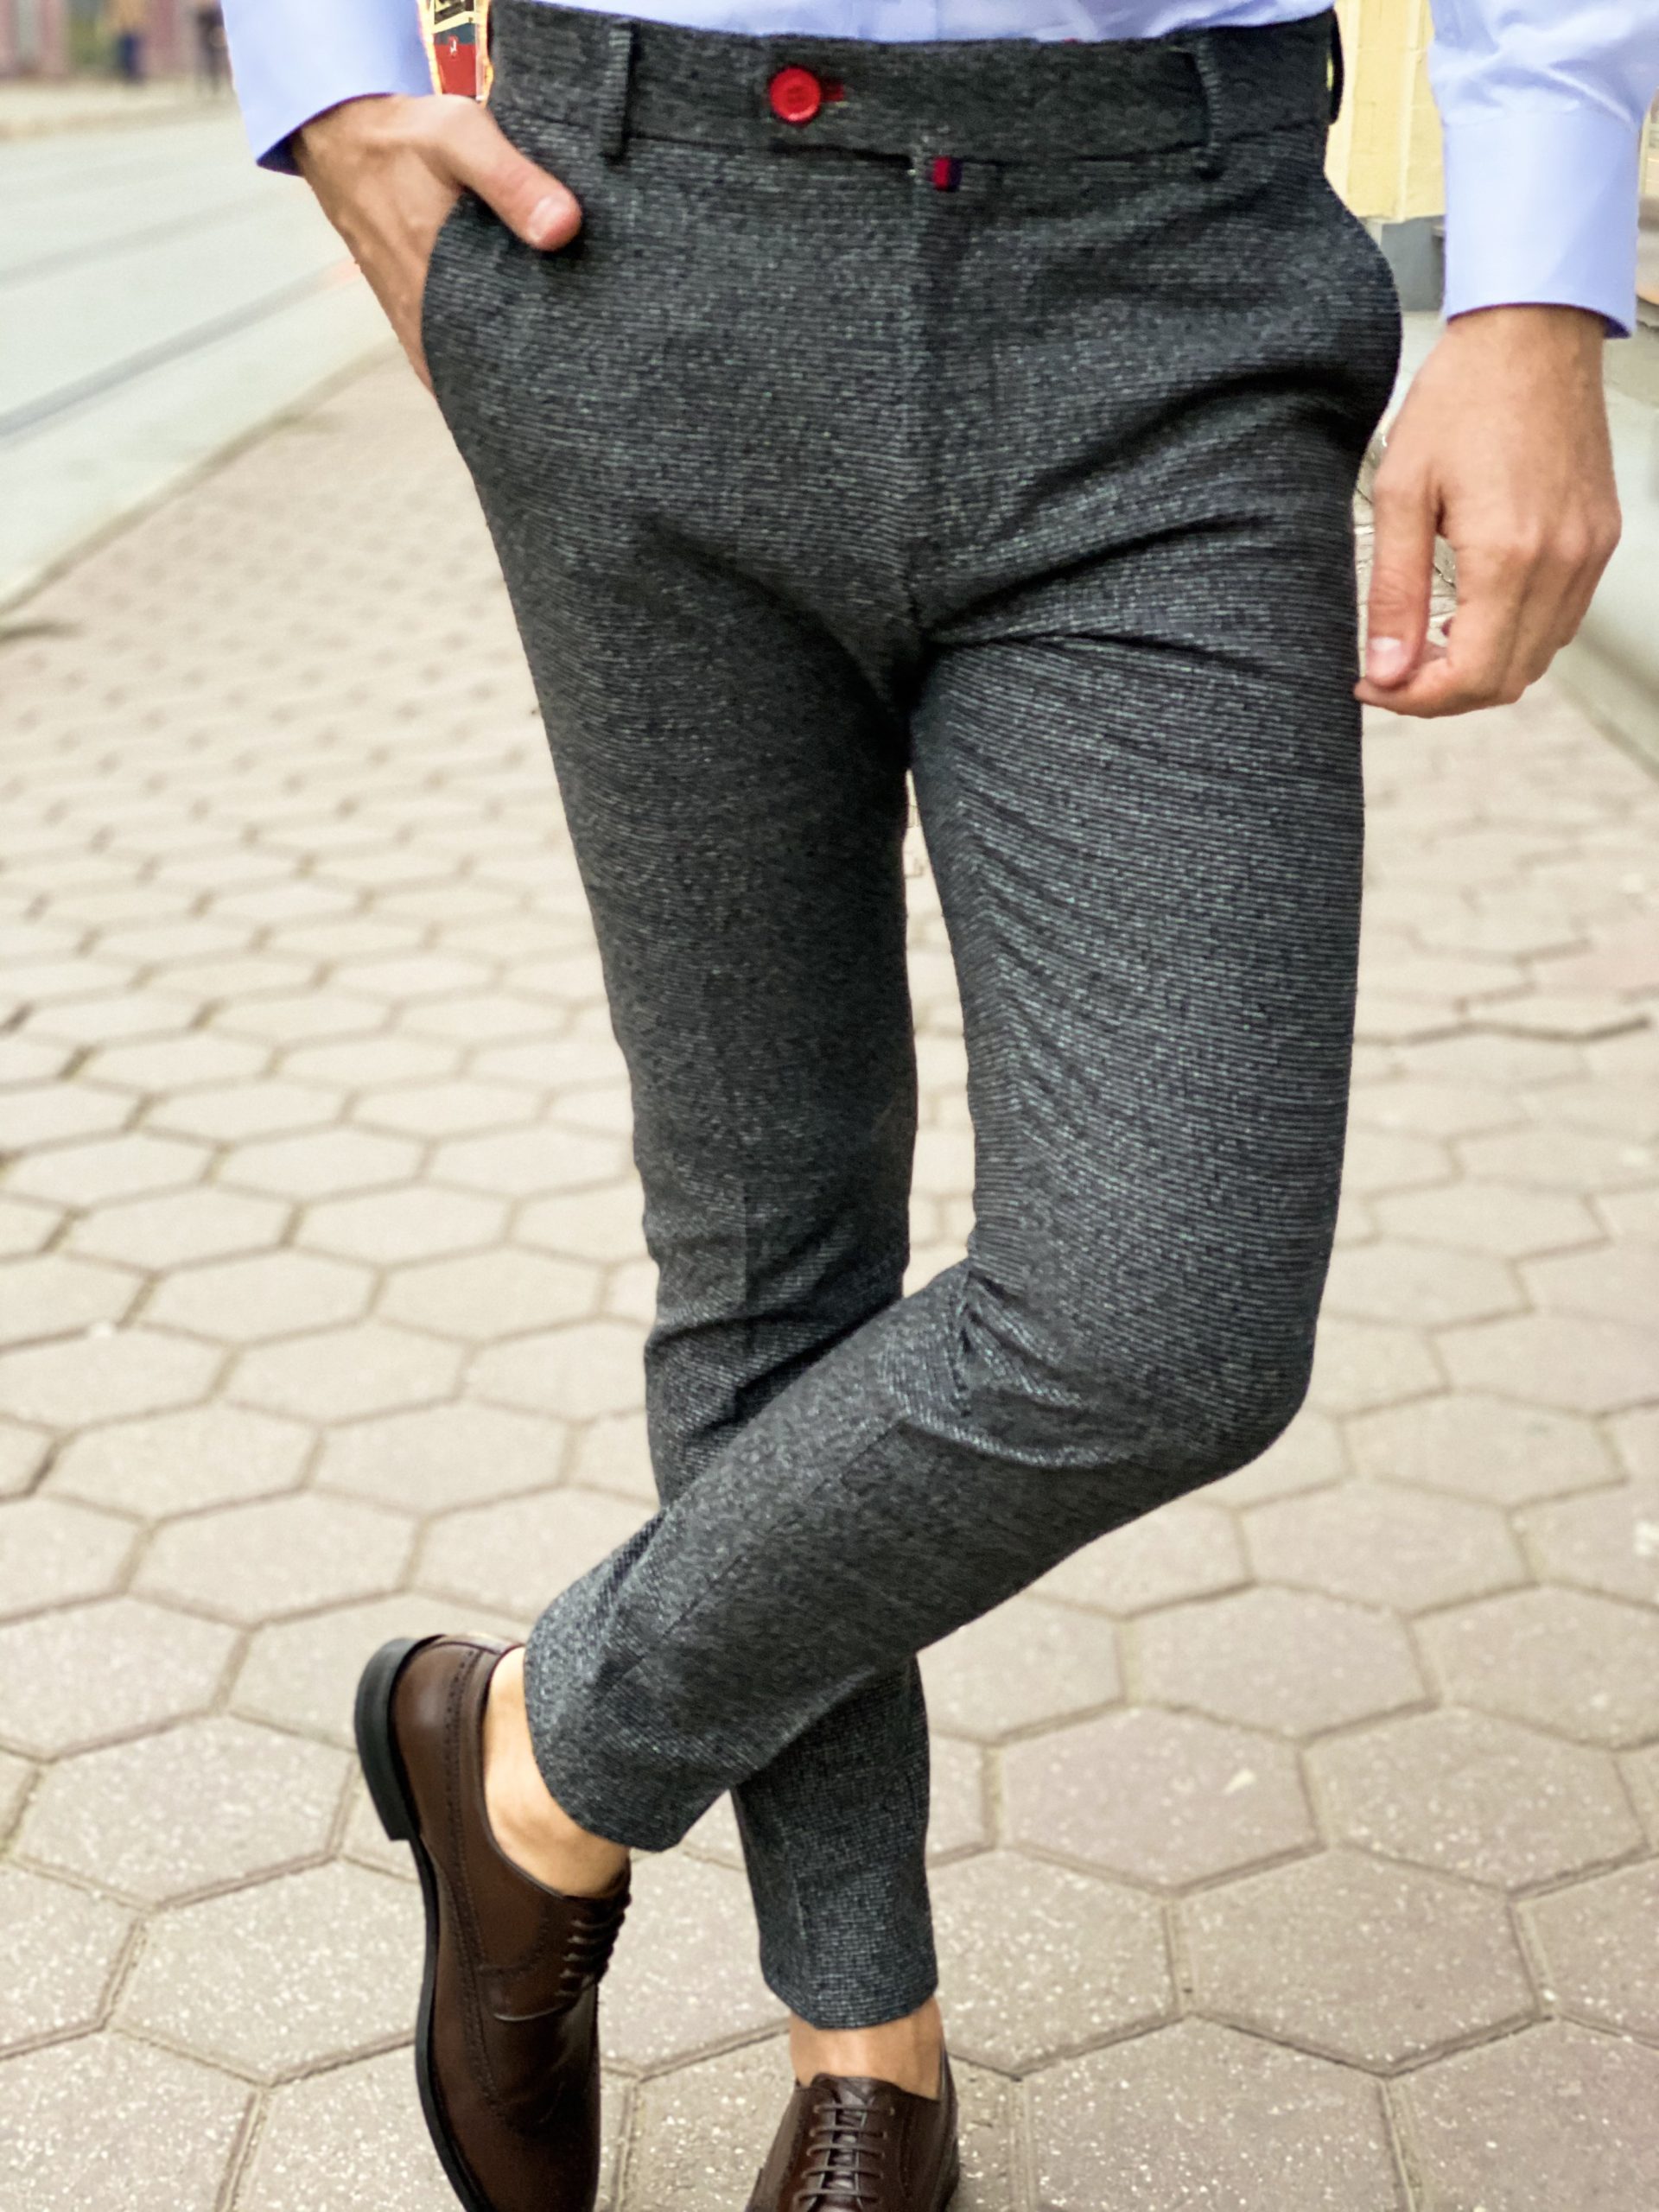 Зауженные мужские брюки серого цвета. Арт.:6-1272-3 – купить в магазинемужской одежды Smartcasuals